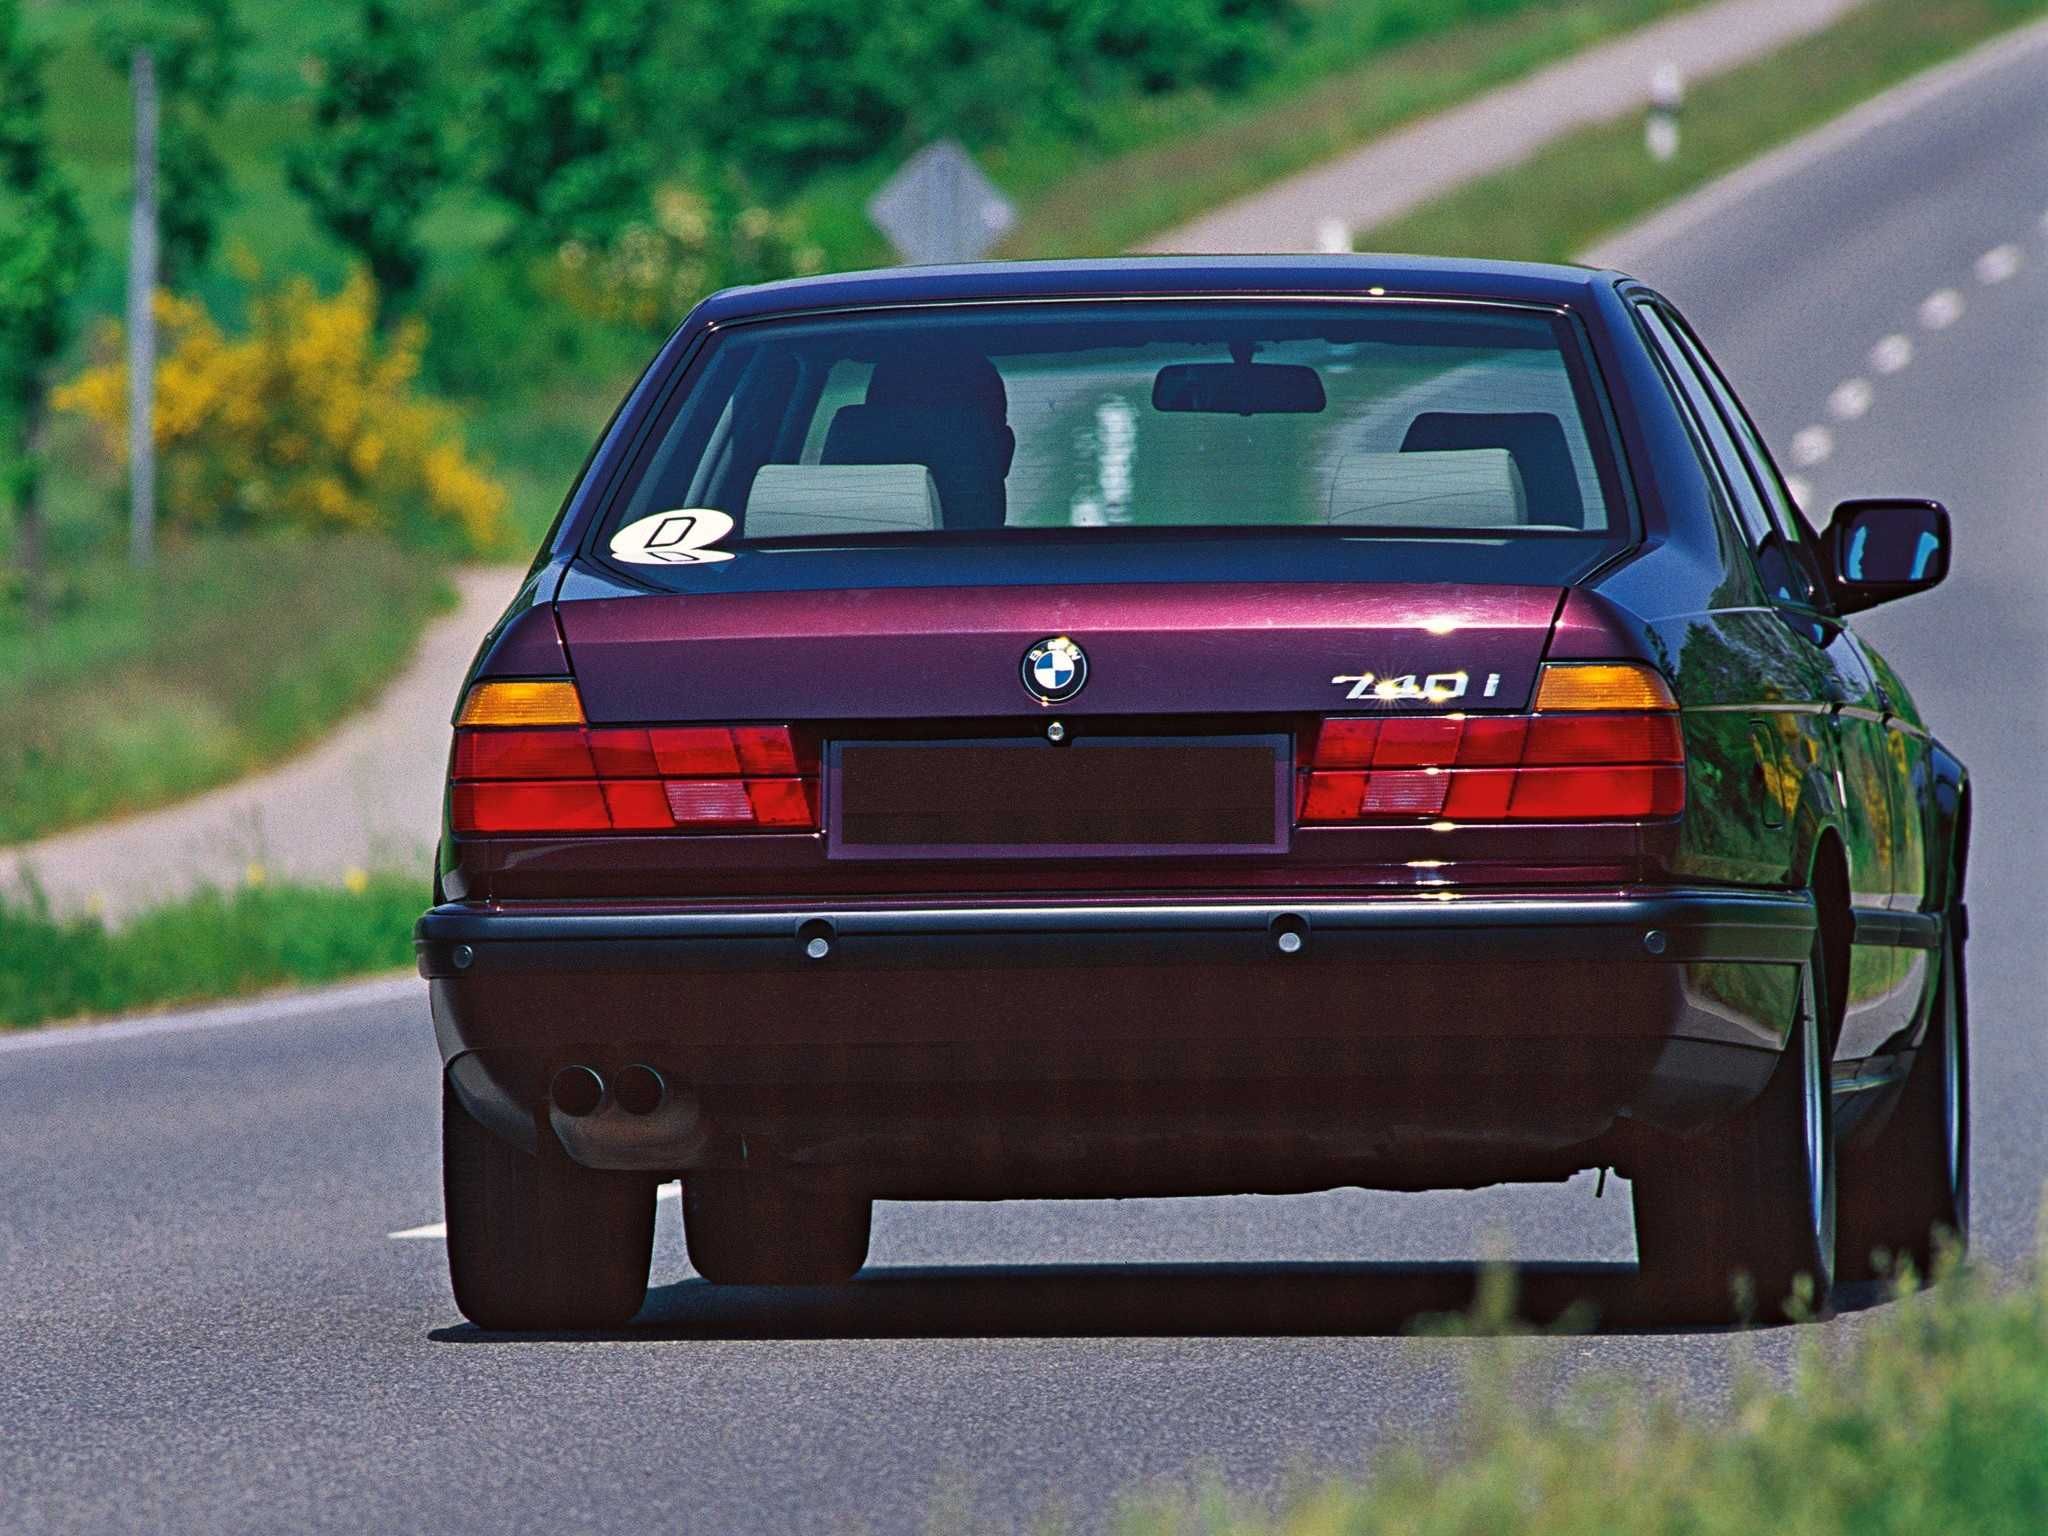 BMW E32 730 Avtоmat. Кредит, выкуп, обмен, рассрочка